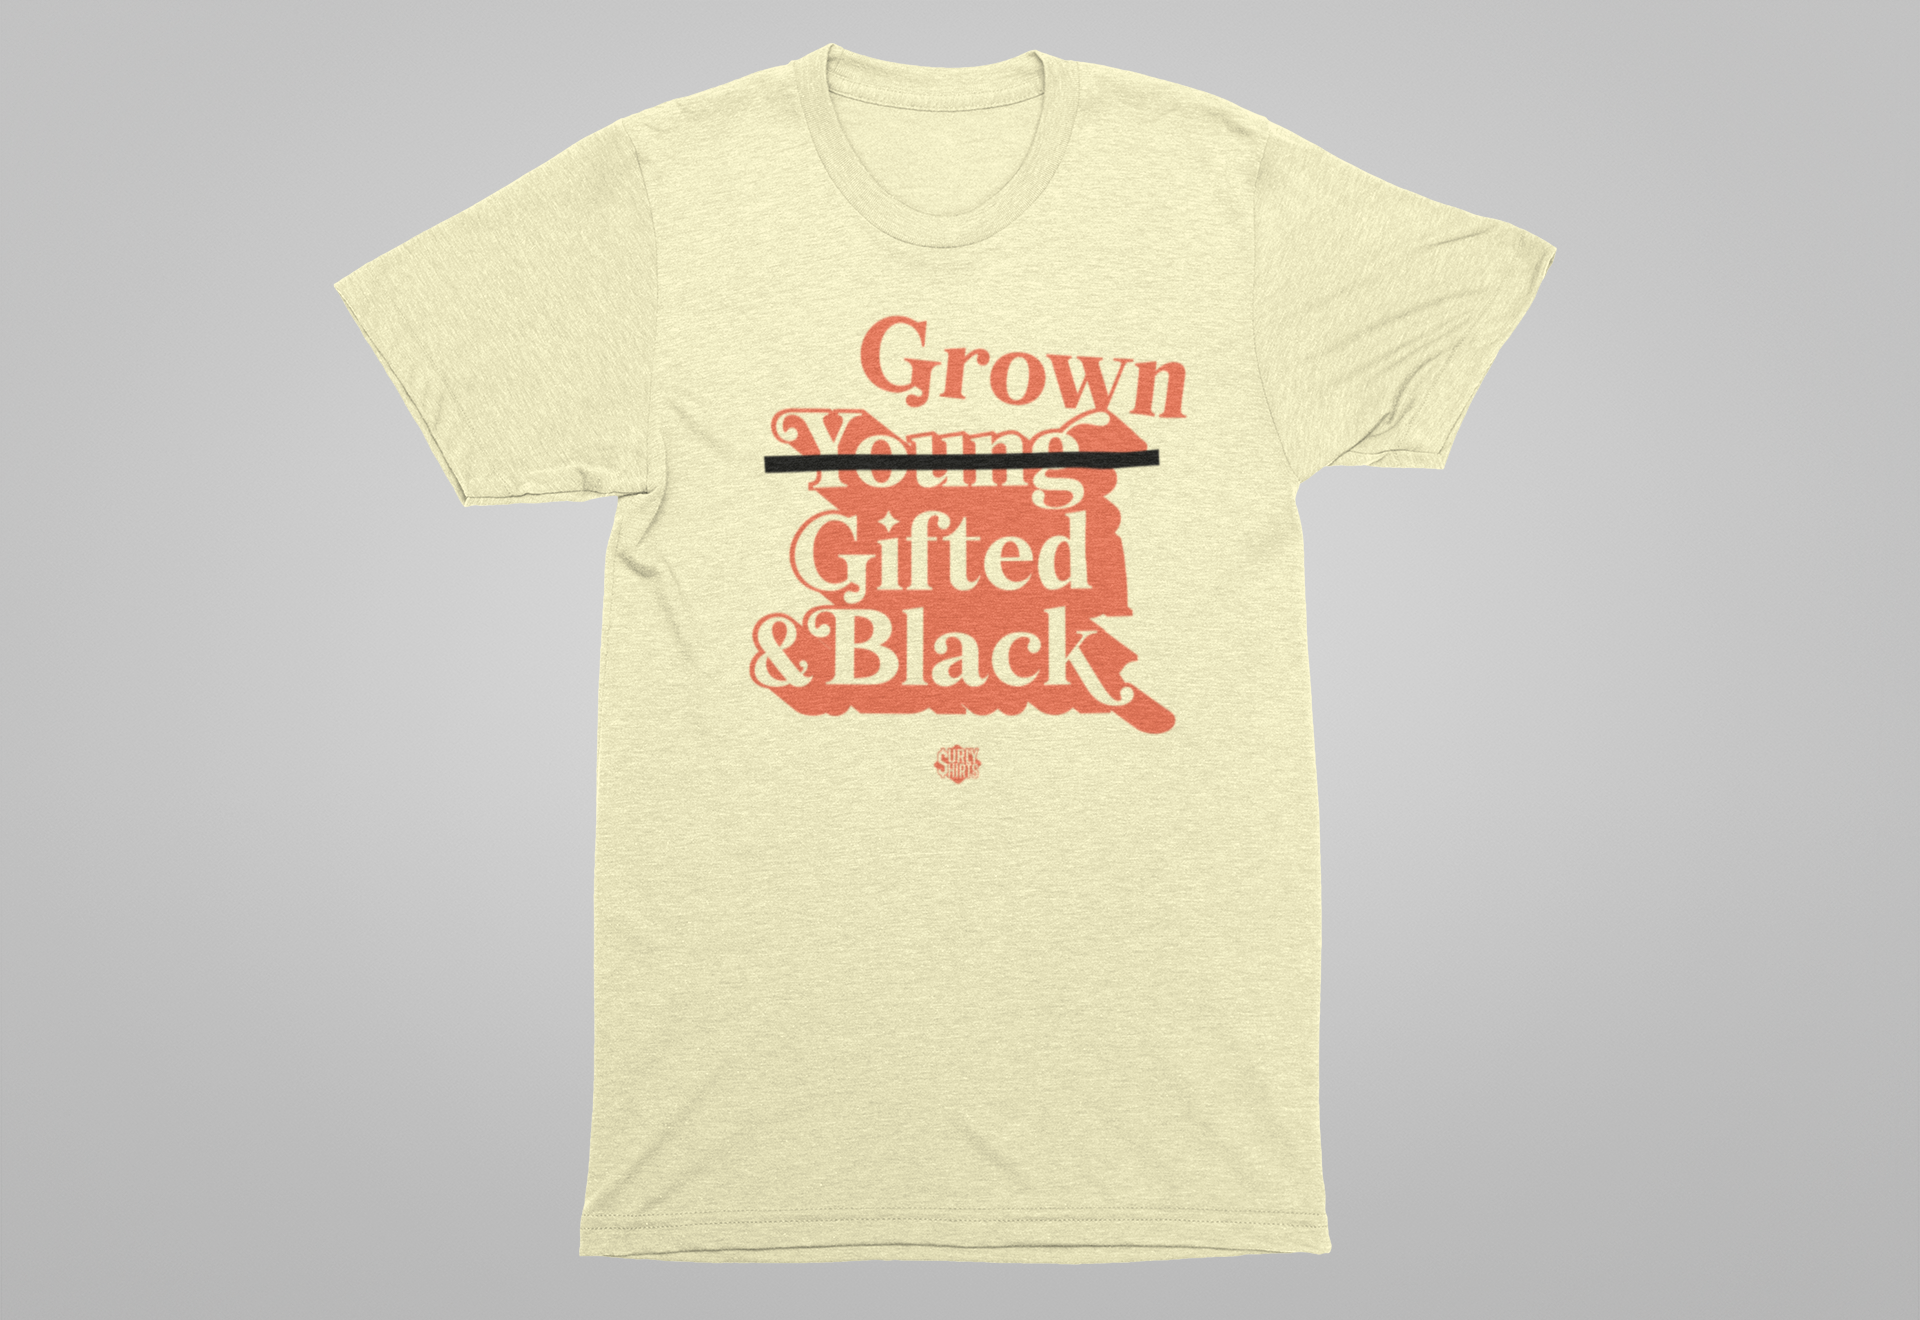 Grown Gifted & Black Tee